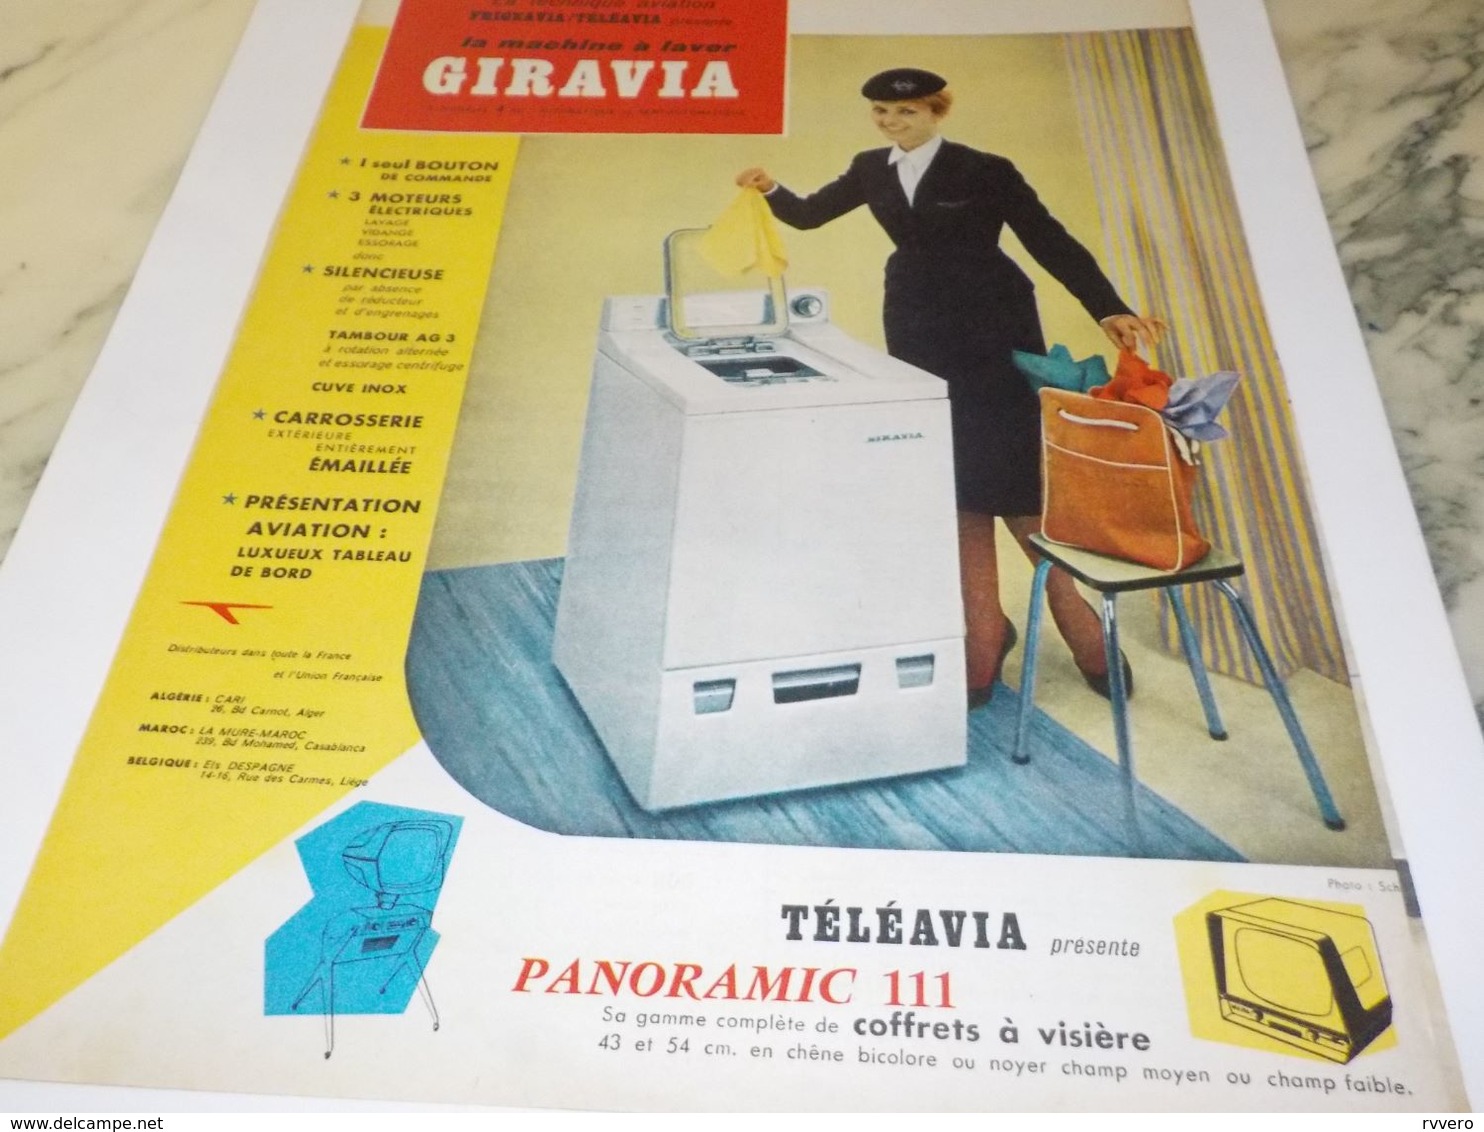 ANCIENNE   PUBLICITE MACHINE A LAVE GIRAVIA TECHNIQUE AVIATION 1959 - Altri Apparecchi